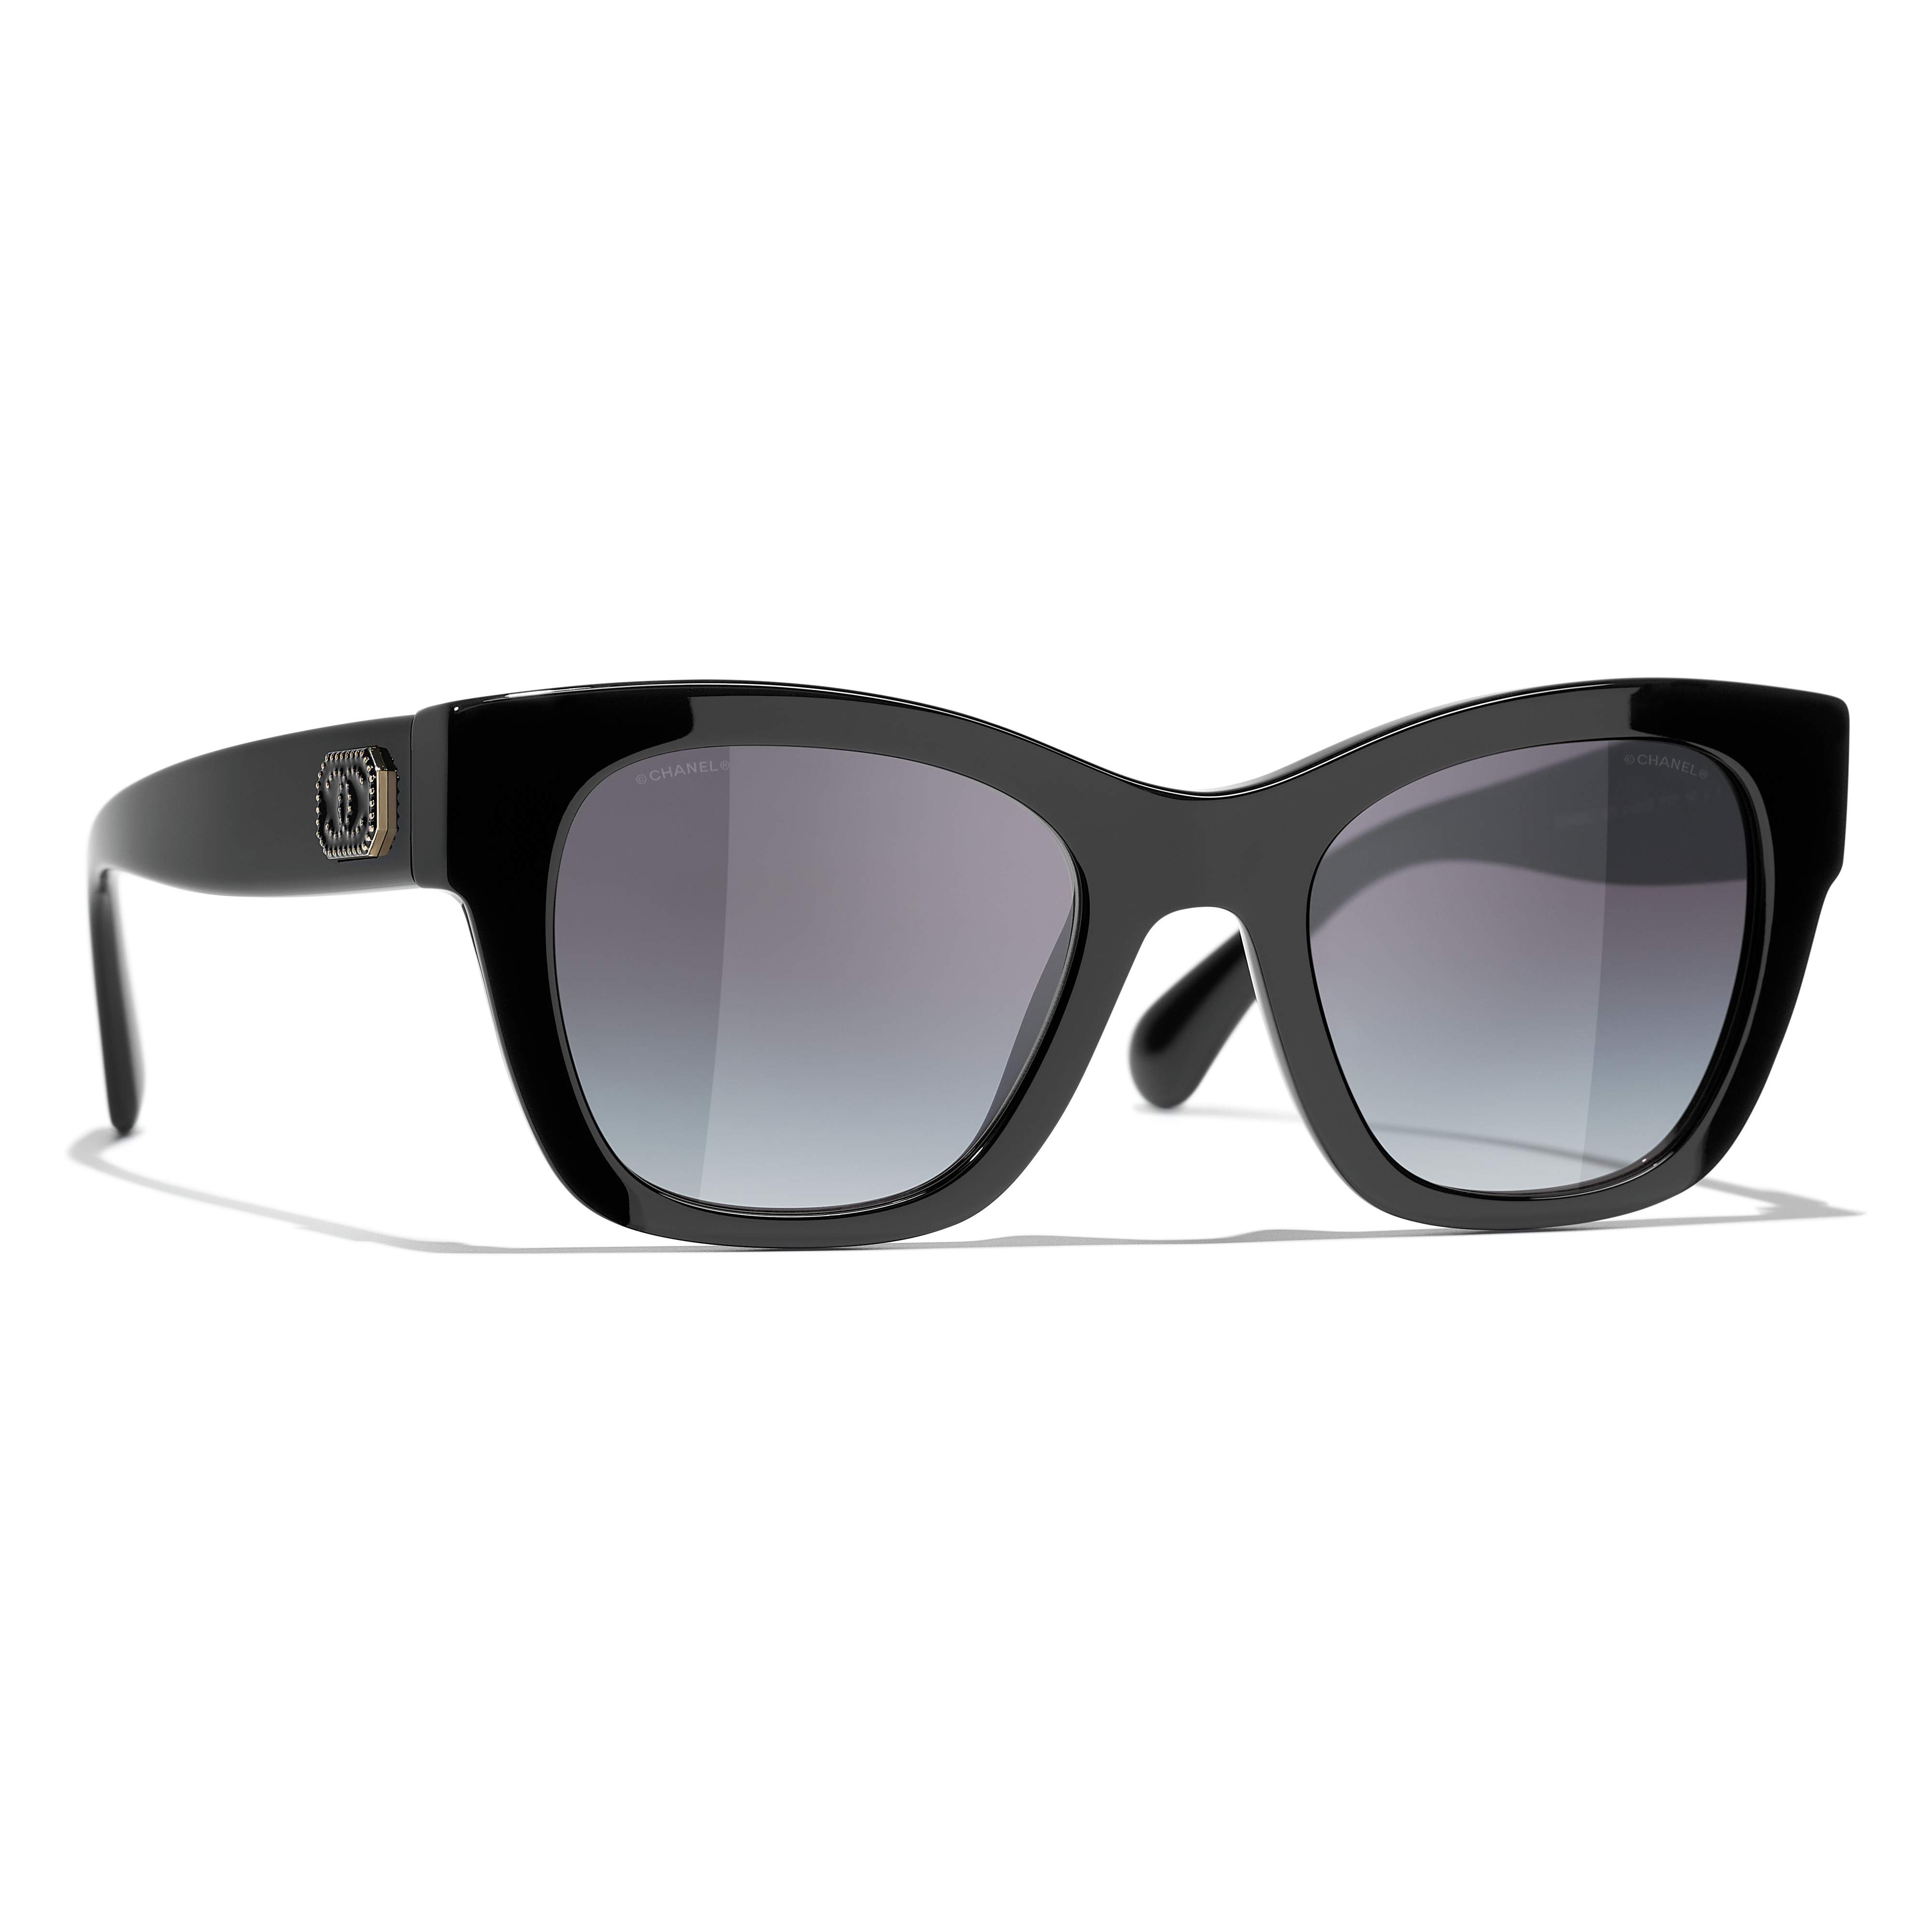 Chanel black & white sunglasses box (empty) from Luxottica